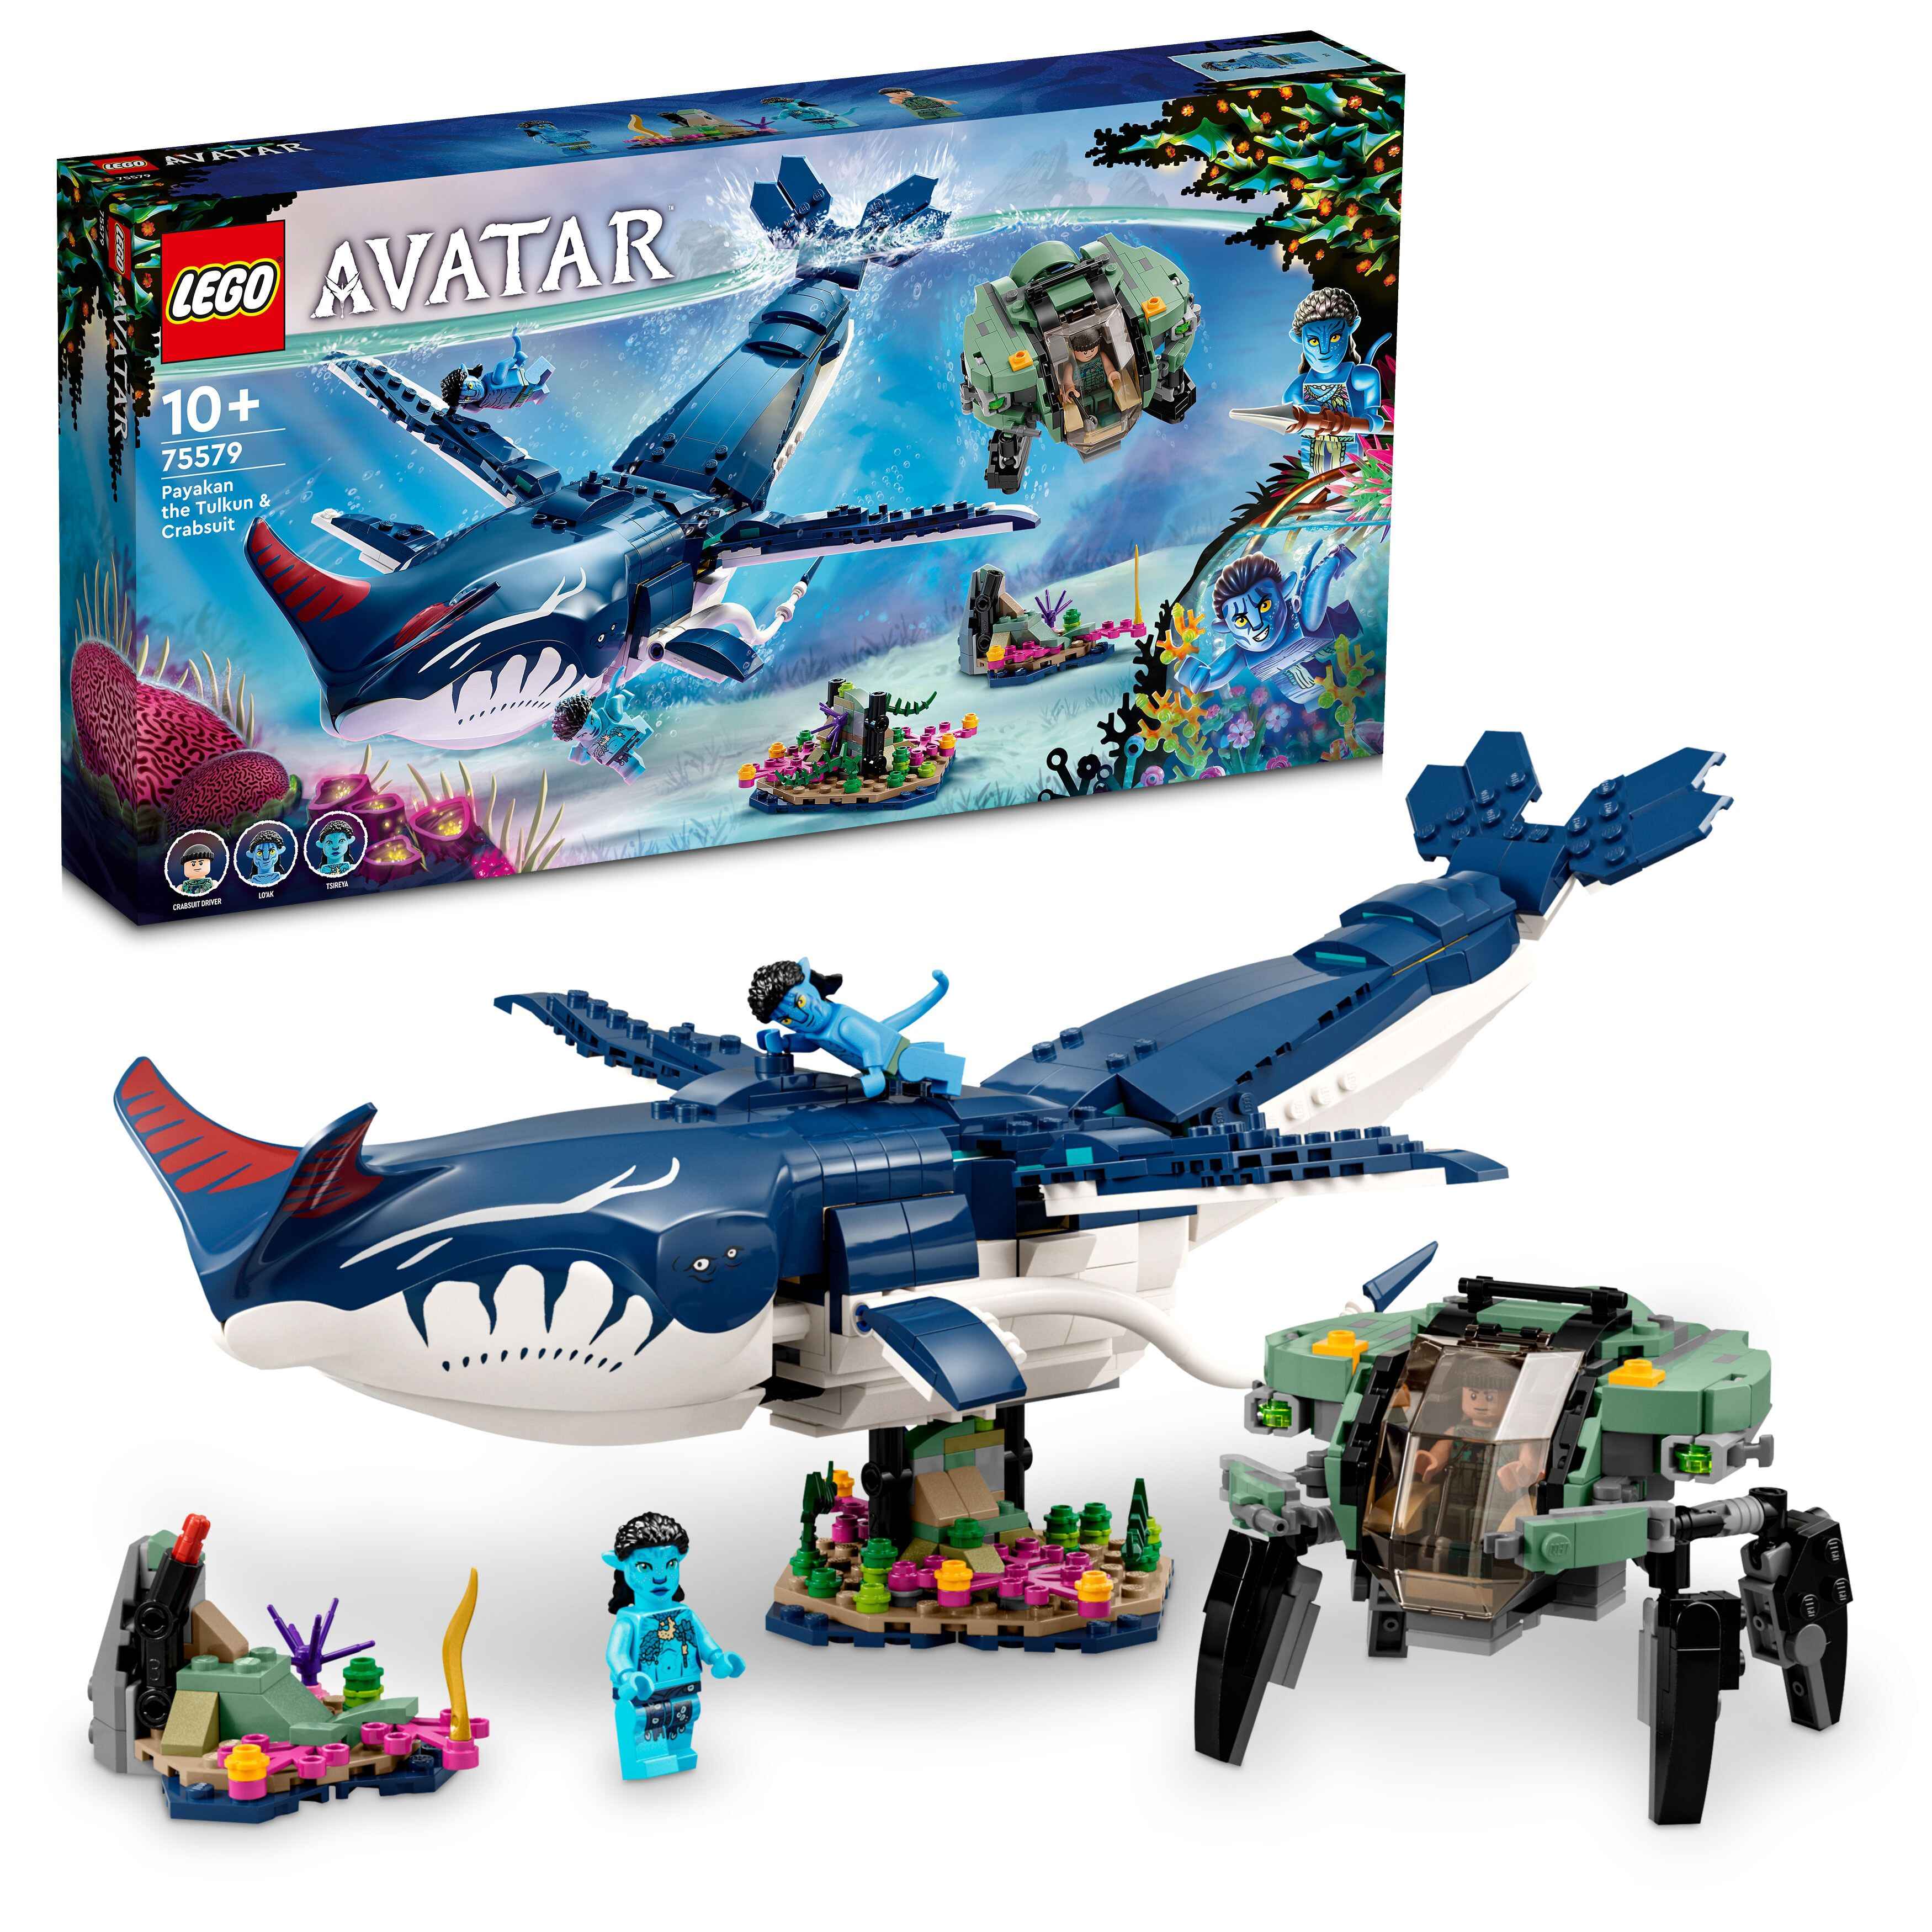 LEGO 75579 Avatar Payakan der Tulkun und Krabbenanzug, Lo‘ak, Tsireya und Pilot